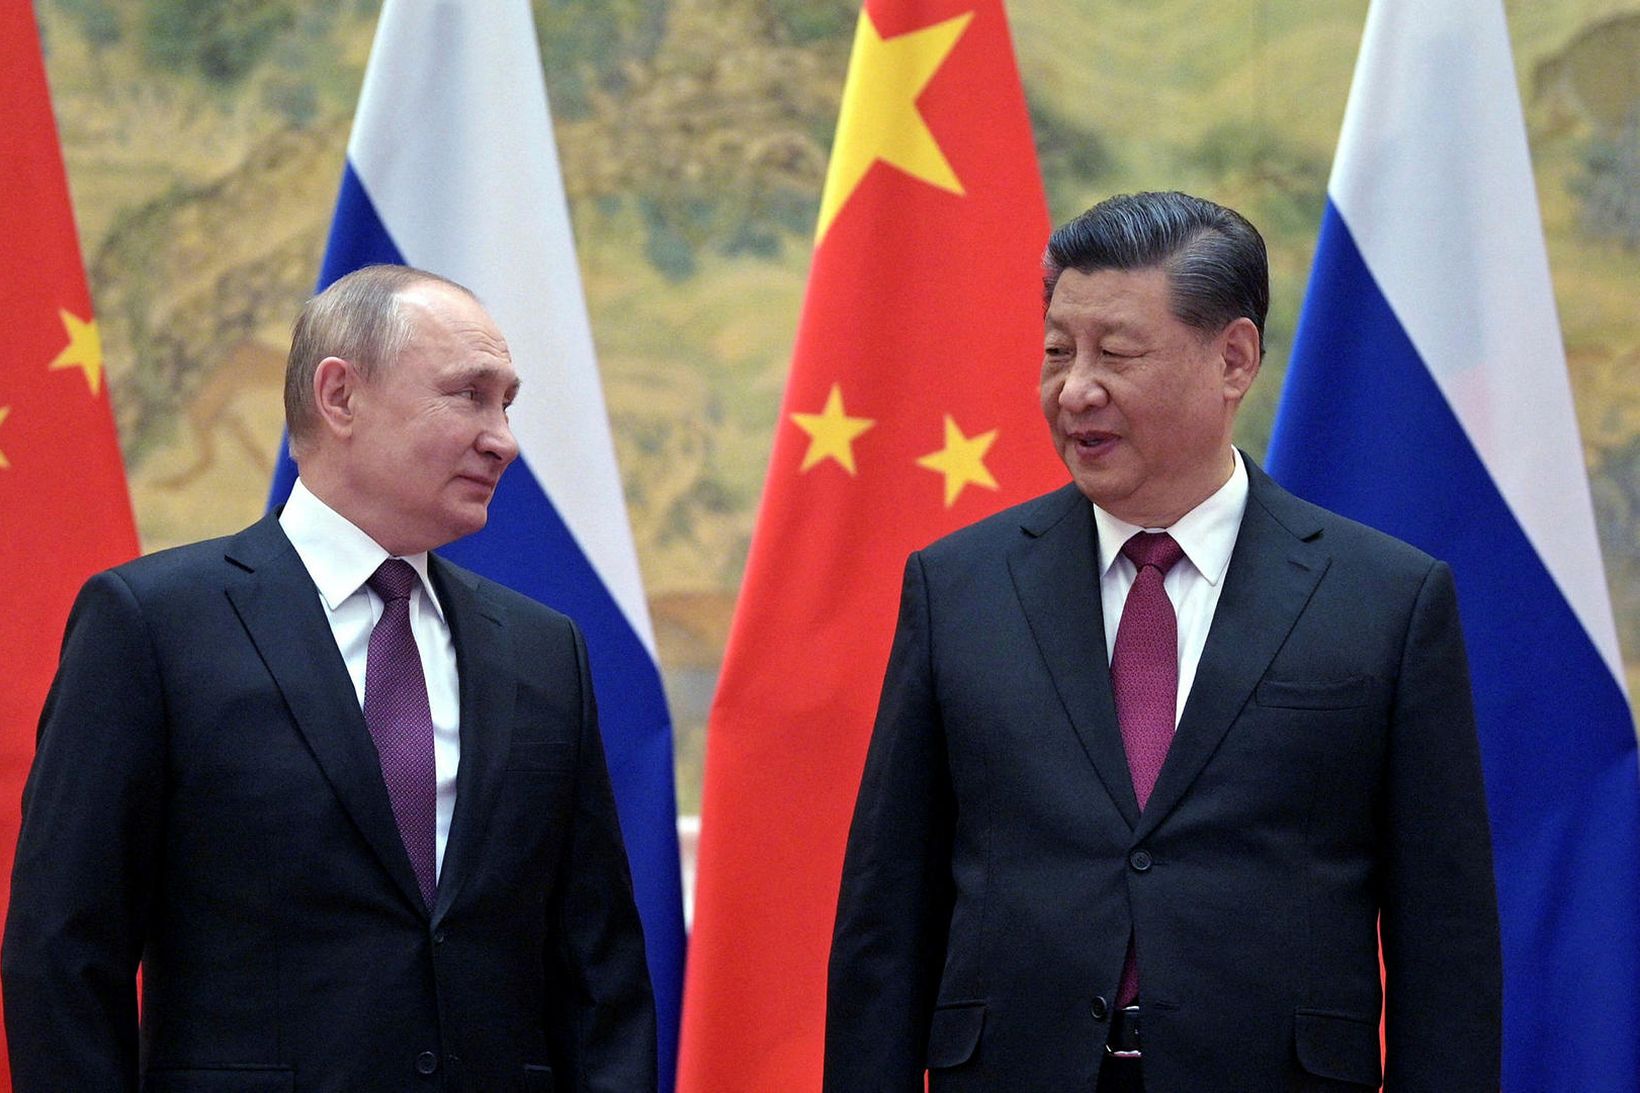 Vladimír Pútín forseti Rússlands og Xi Jinping forseti Kína.